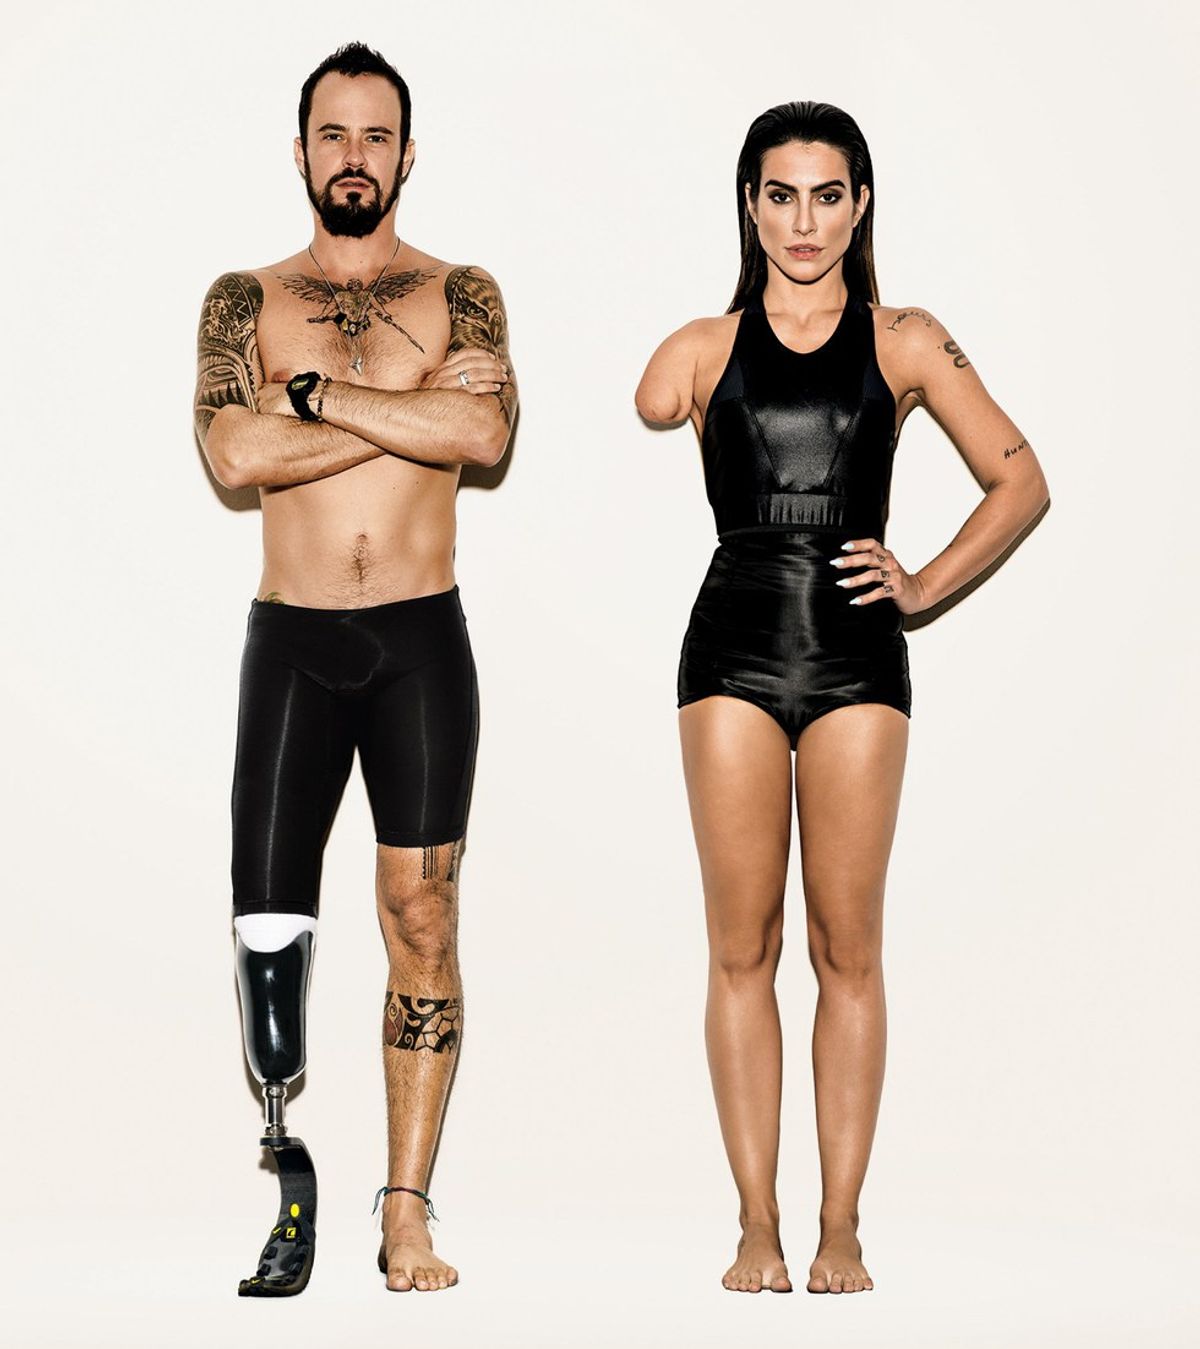 About Vogue Brazil’s Recent Paralympian Campaign…